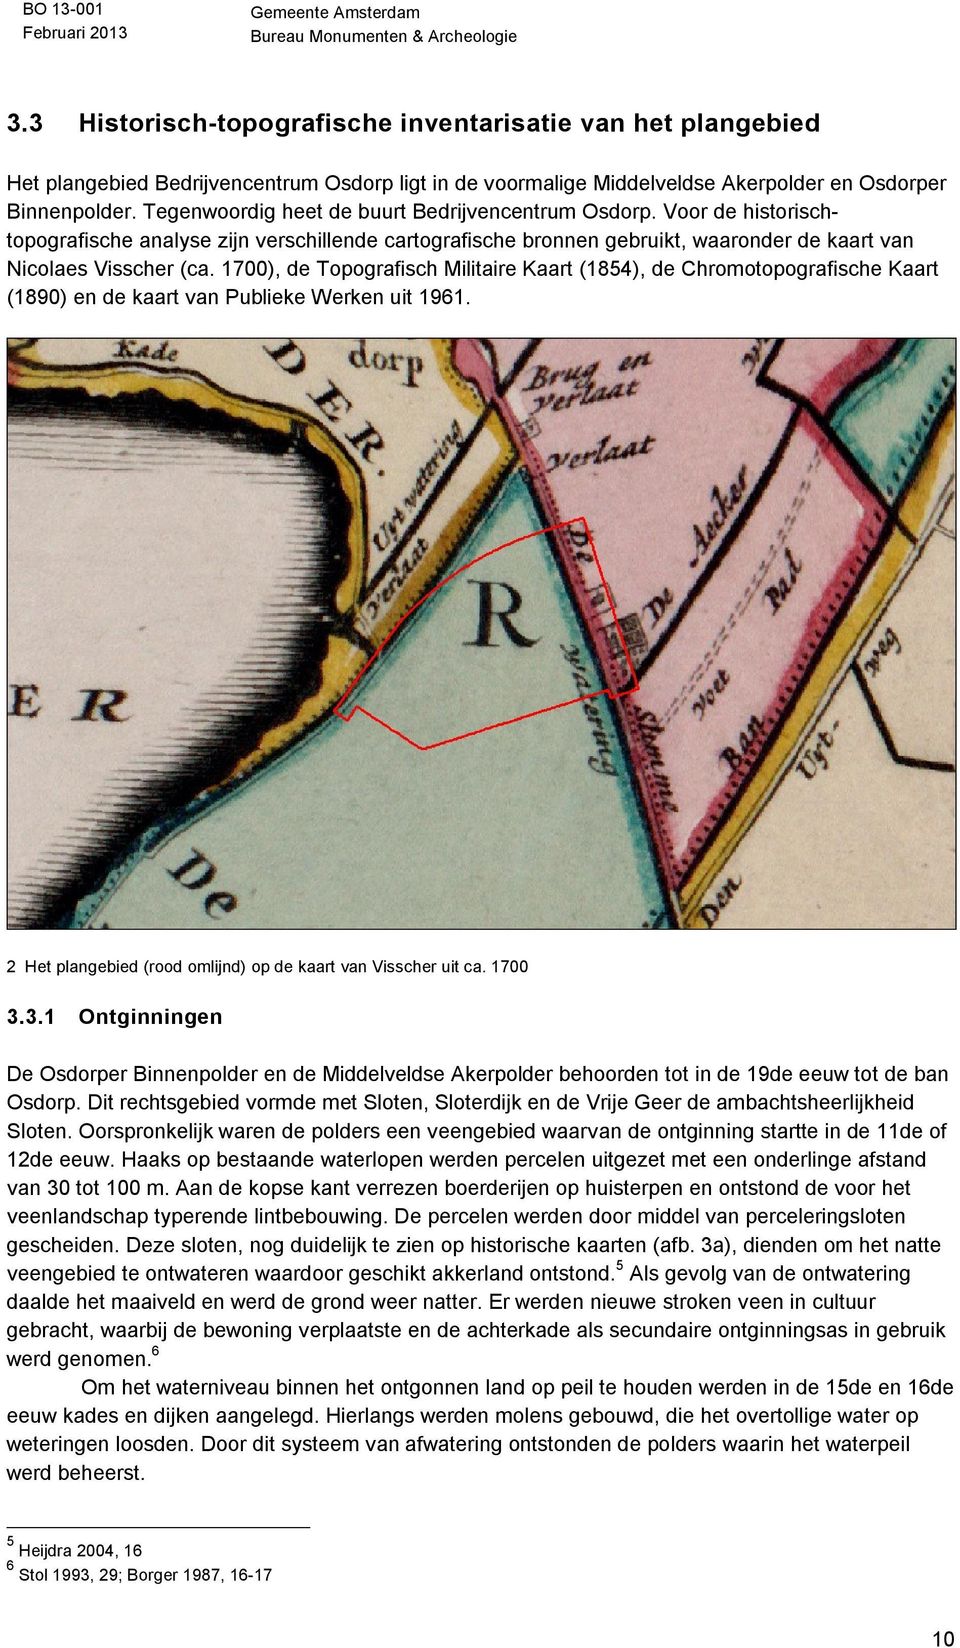 1700), de Topografisch Militaire Kaart (1854), de Chromotopografische Kaart (1890) en de kaart van Publieke Werken uit 1961. 2 Het plangebied (rood omlijnd) op de kaart van Visscher uit ca. 1700 3.